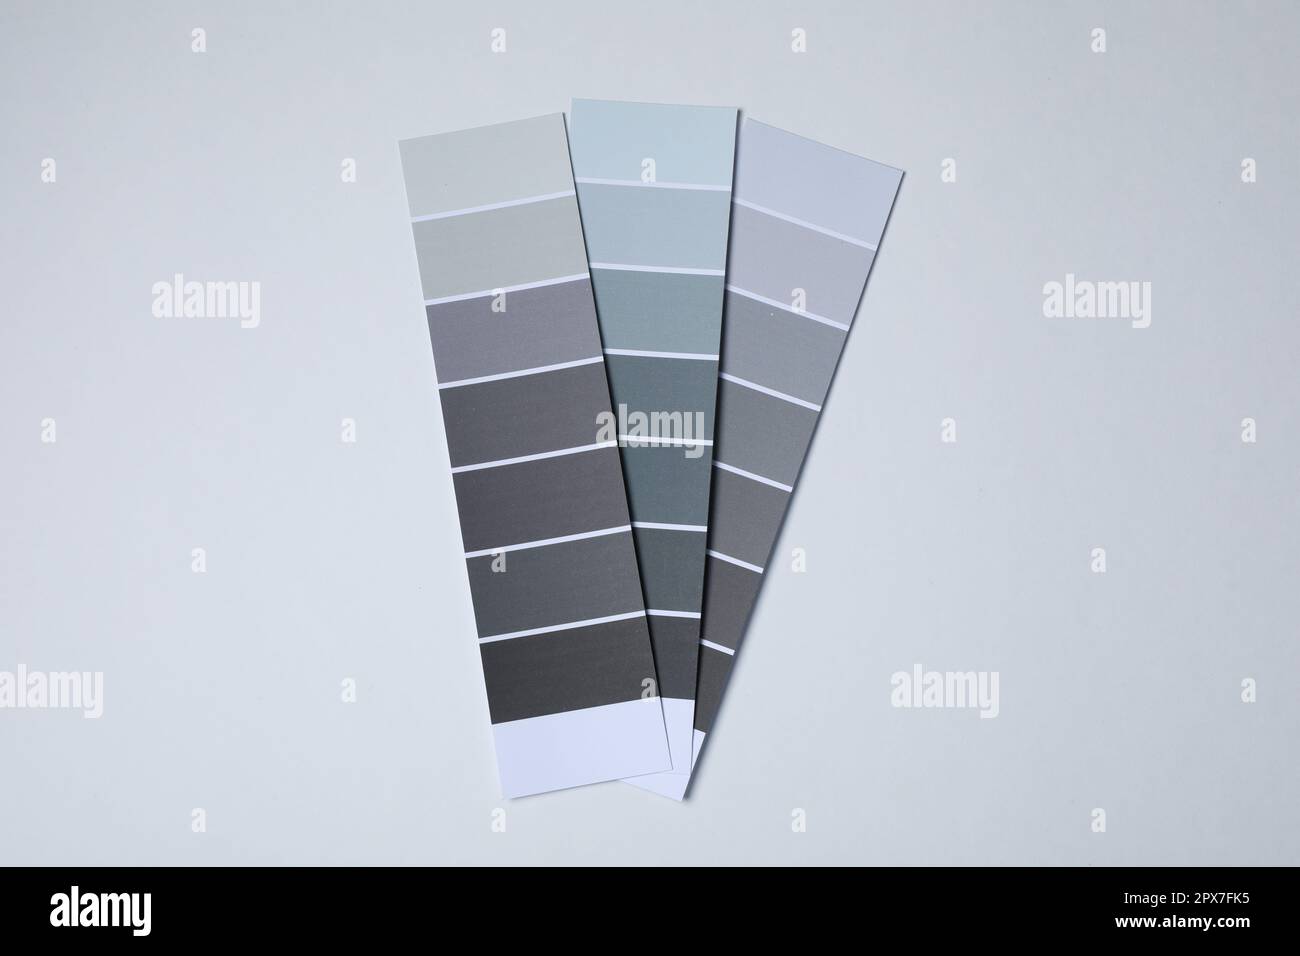 Écailles de peinture de couleur de nuances de gris sur fond clair, vue de dessus Banque D'Images